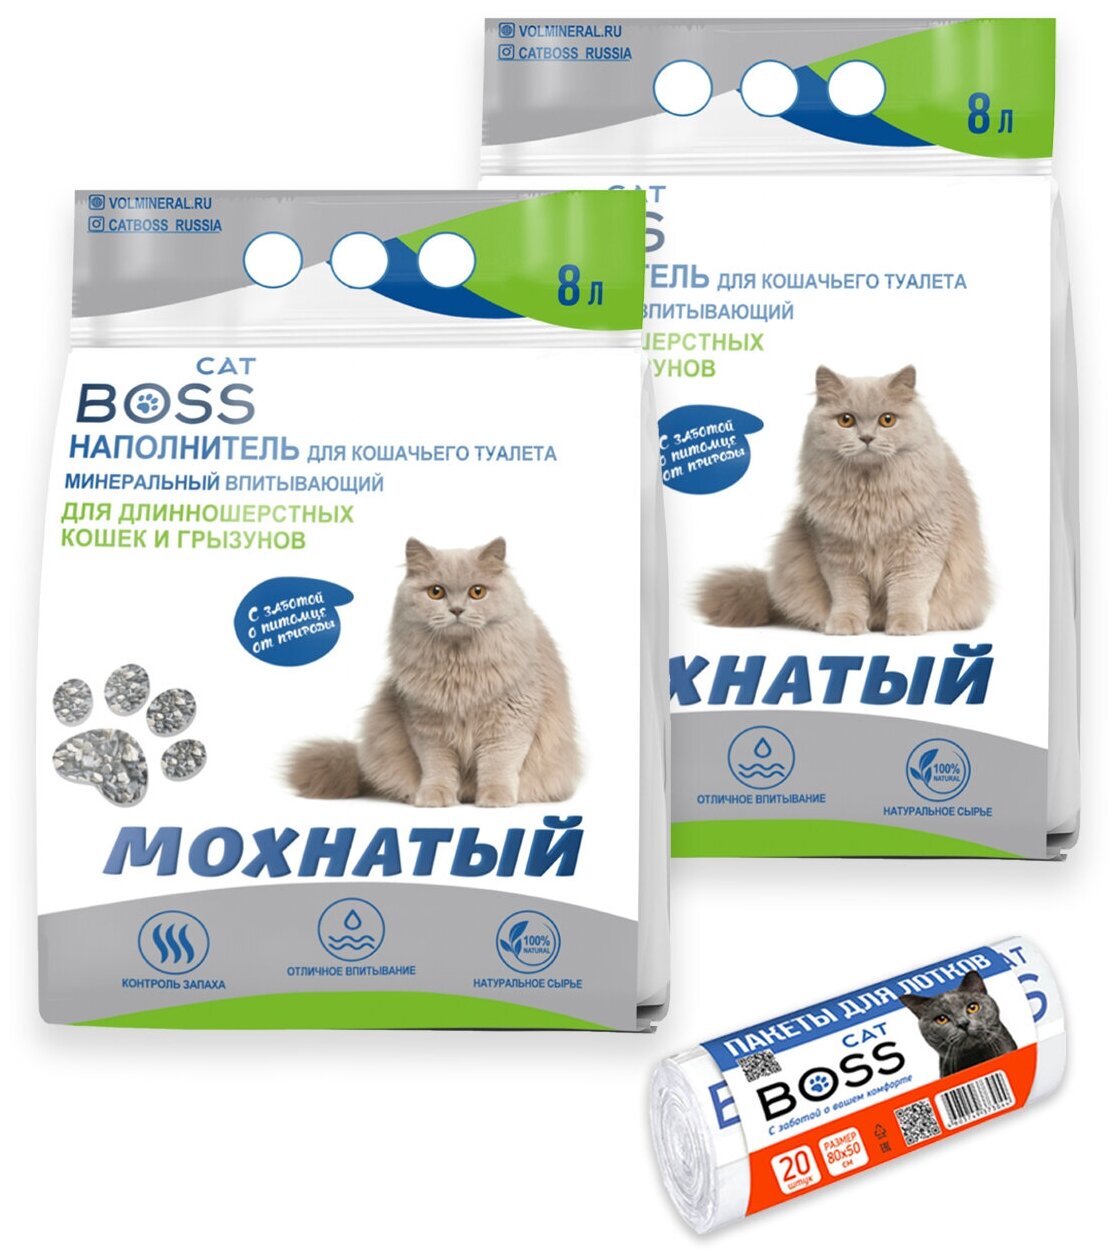 Наполнитель для кошачьего туалета минеральный / длинношерстные кошки и грызуны (мохнатый) CatBoss, 16л. (8лх2) + пакеты для кошачьего туалета (20 шт)